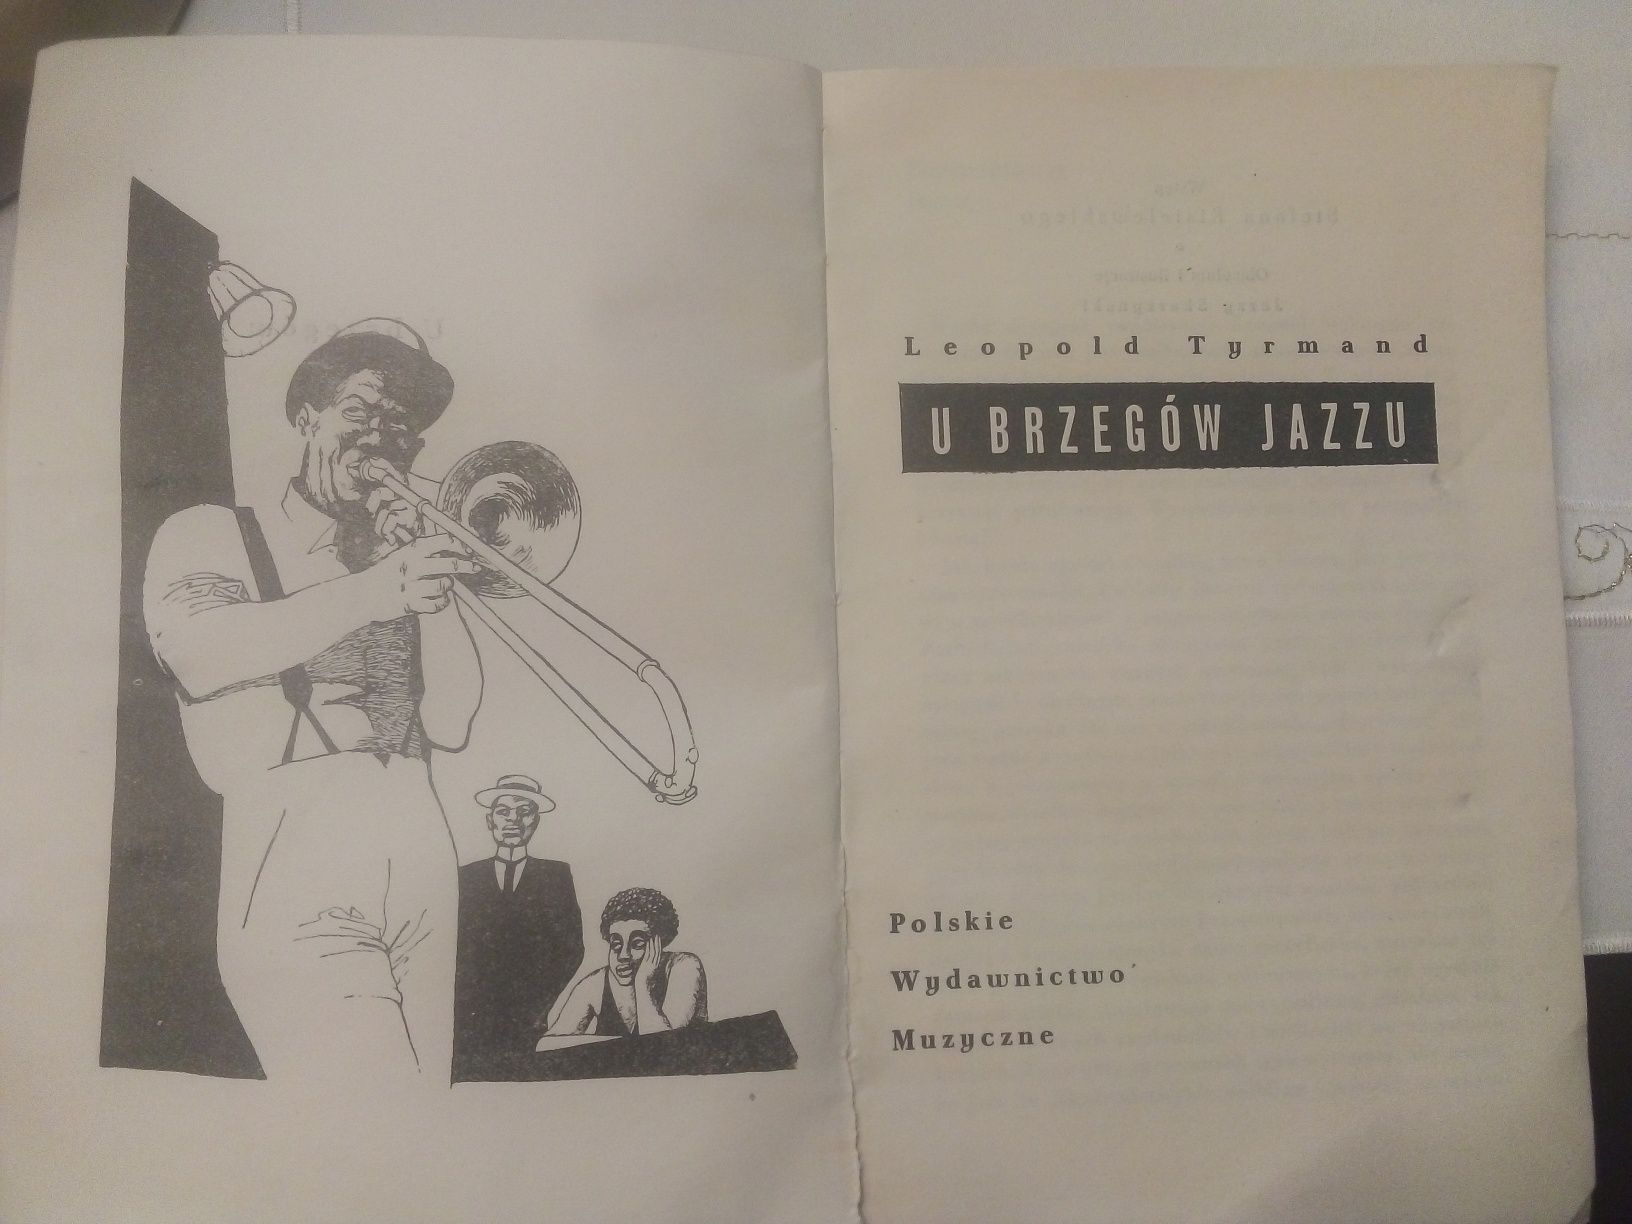 U brzegów jazzu, Leopold Tyrmand, Polskie Wydawnictwo Muzyczne